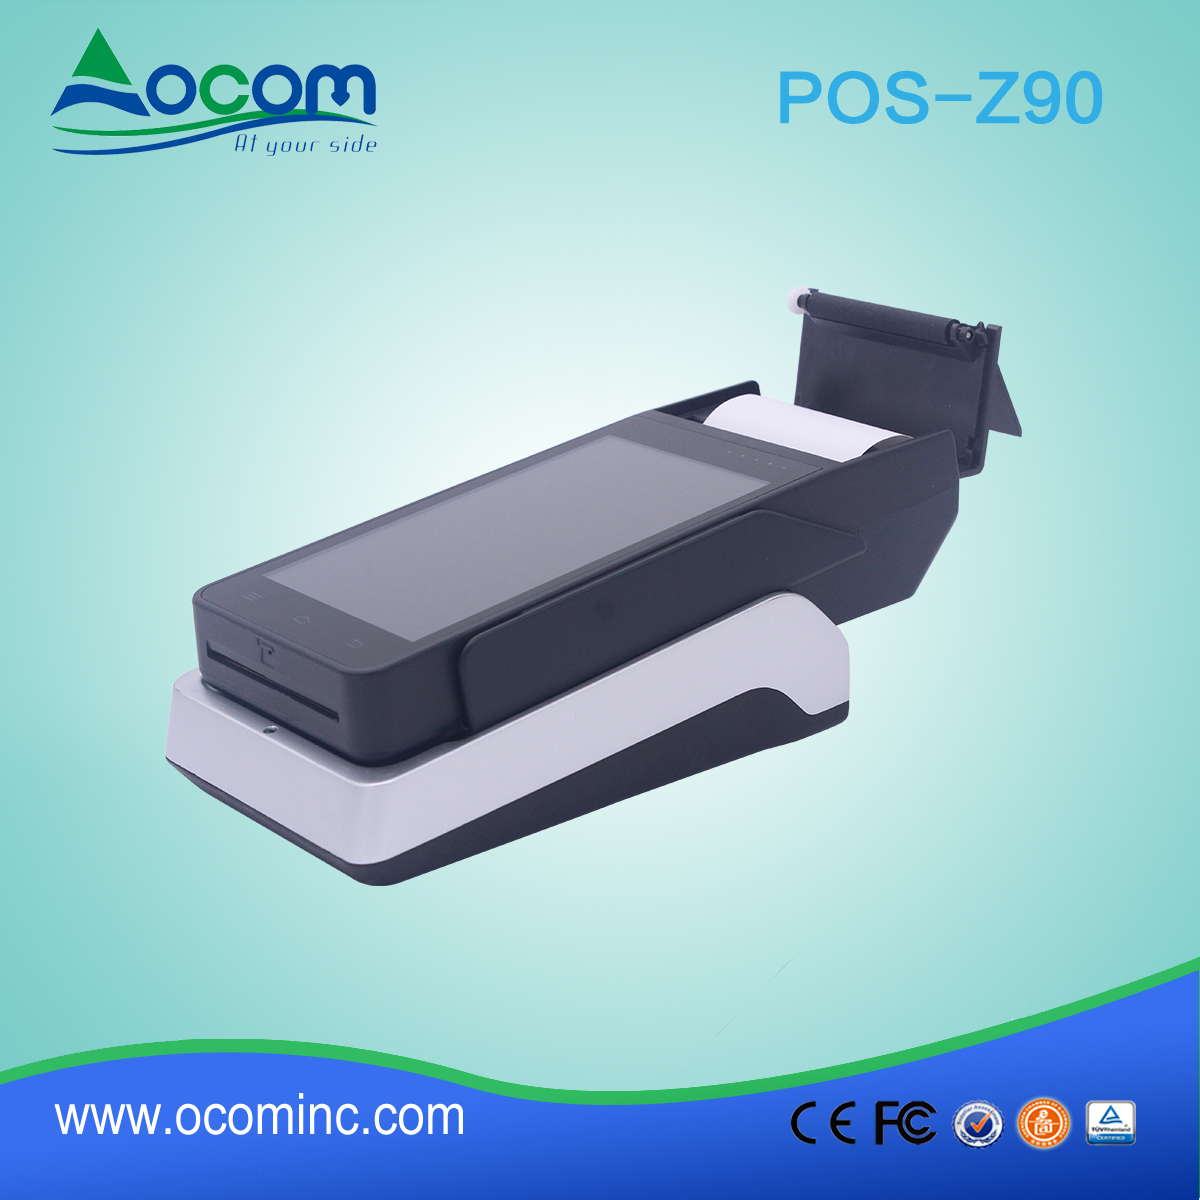 تصميم جديد المحمولة POS آلة الدفع مع طابعة 58 مم بنيت في (POS -Z90)